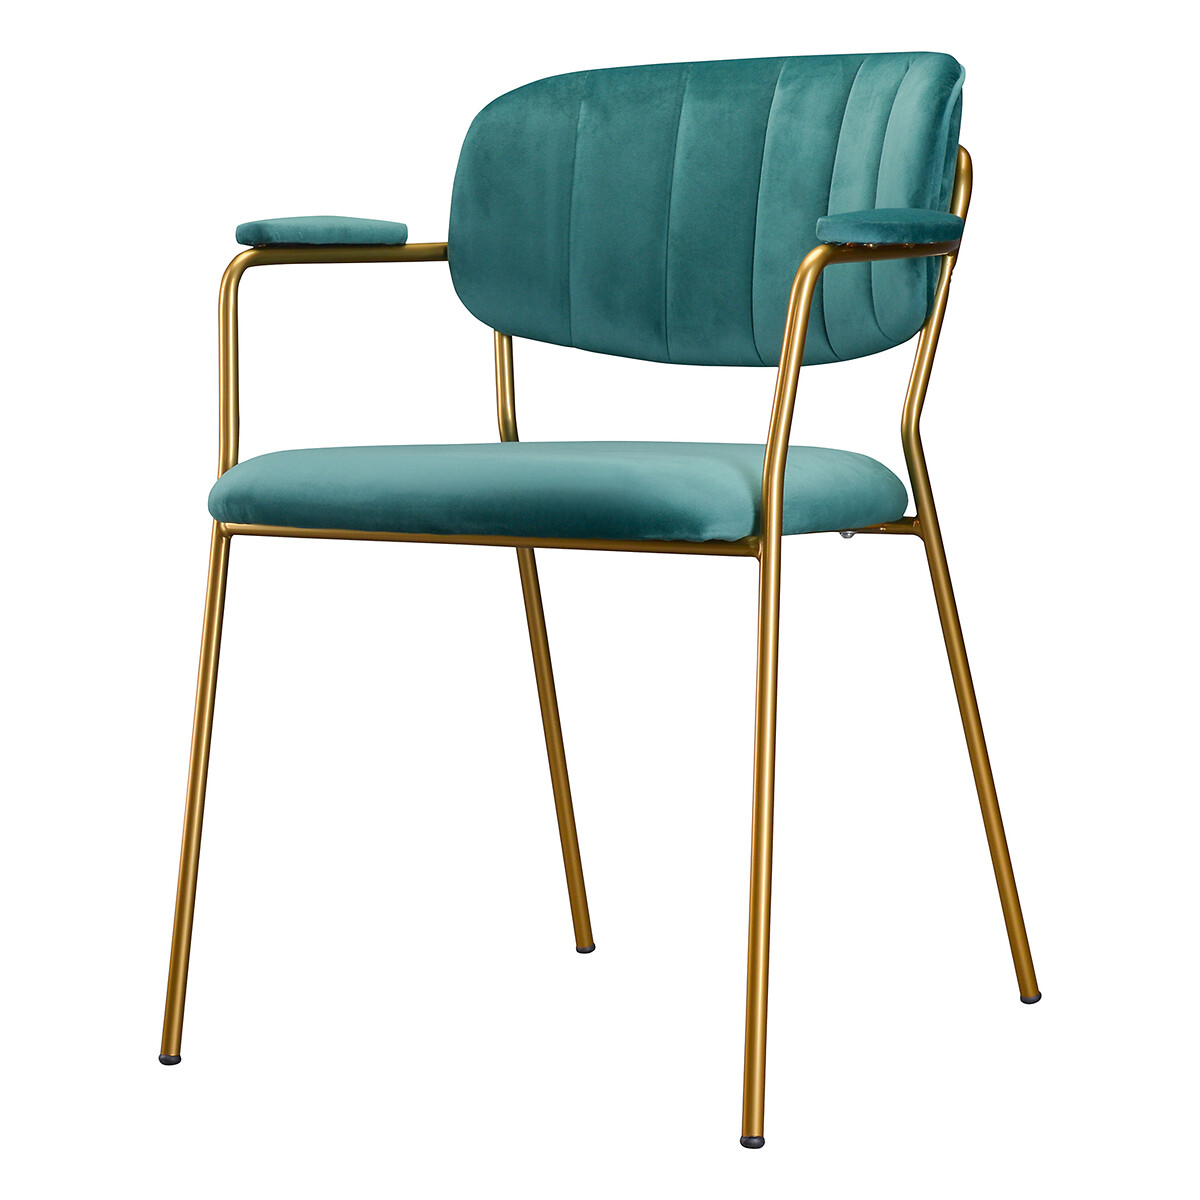 Стул Eirill единый размер зеленый тканевый офисный стул в скандинавском стиле поддержка спинки на колесах поворотный офисный стул поддержка поясницы офисная мебель